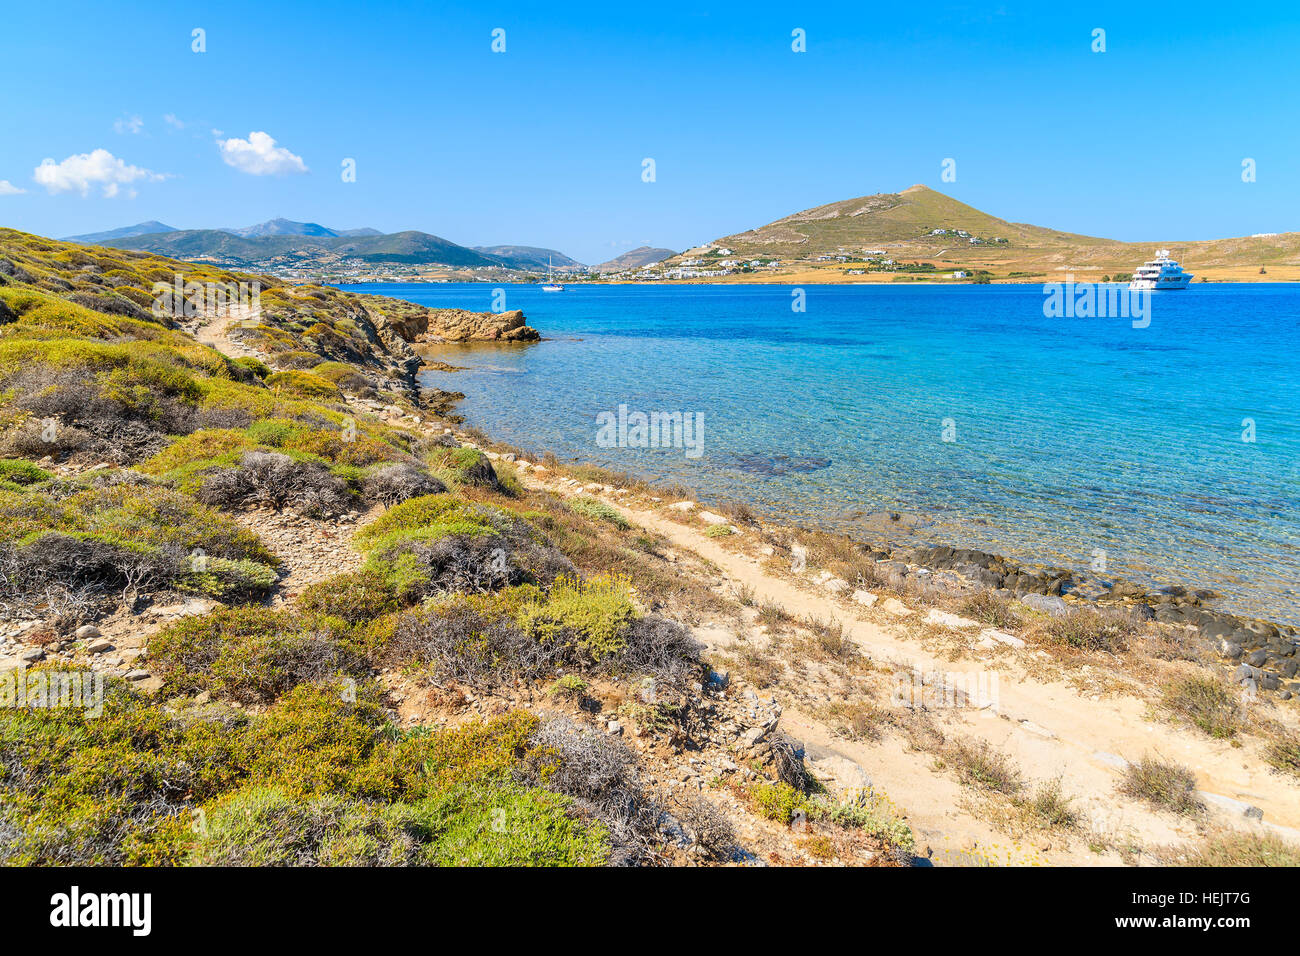 Schönen Küstenweg entlang kristallklaren Meerwasser in Monastiri Bucht auf der Insel Paros, Griechenland Stockfoto